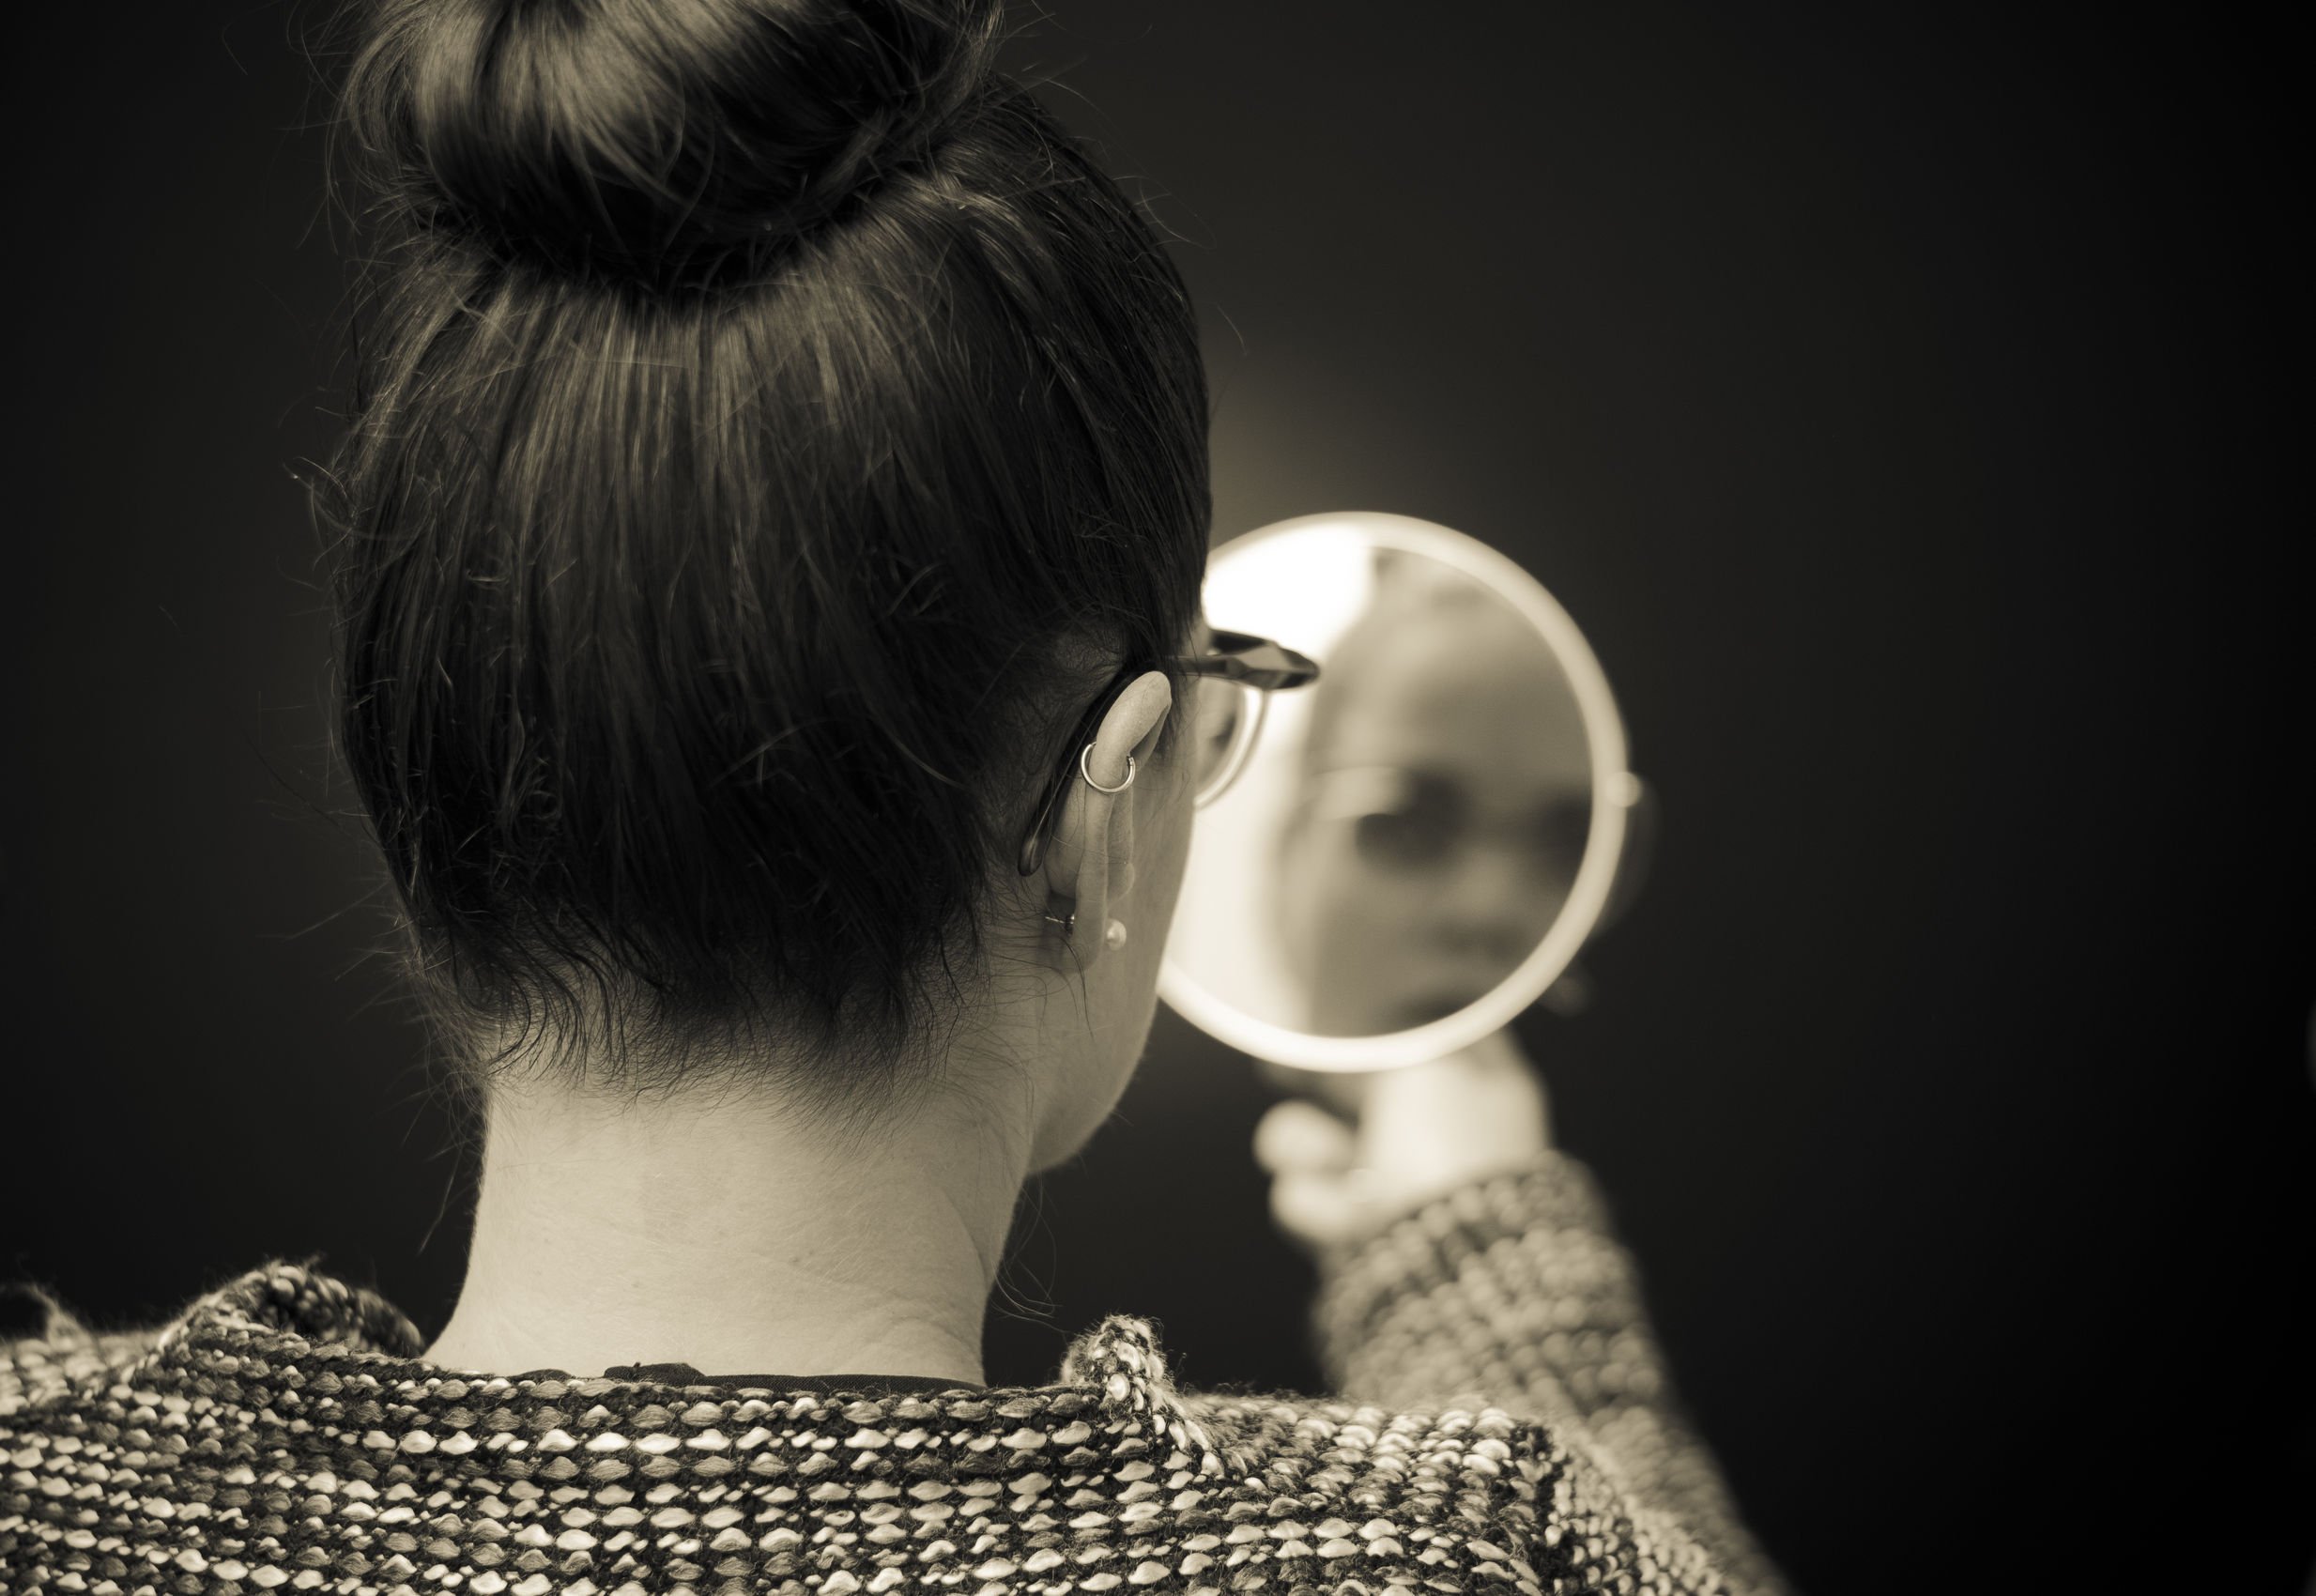 Foto preta e branca de mulher de costas, com os cabelos presos, se olhando em um espelho de mão